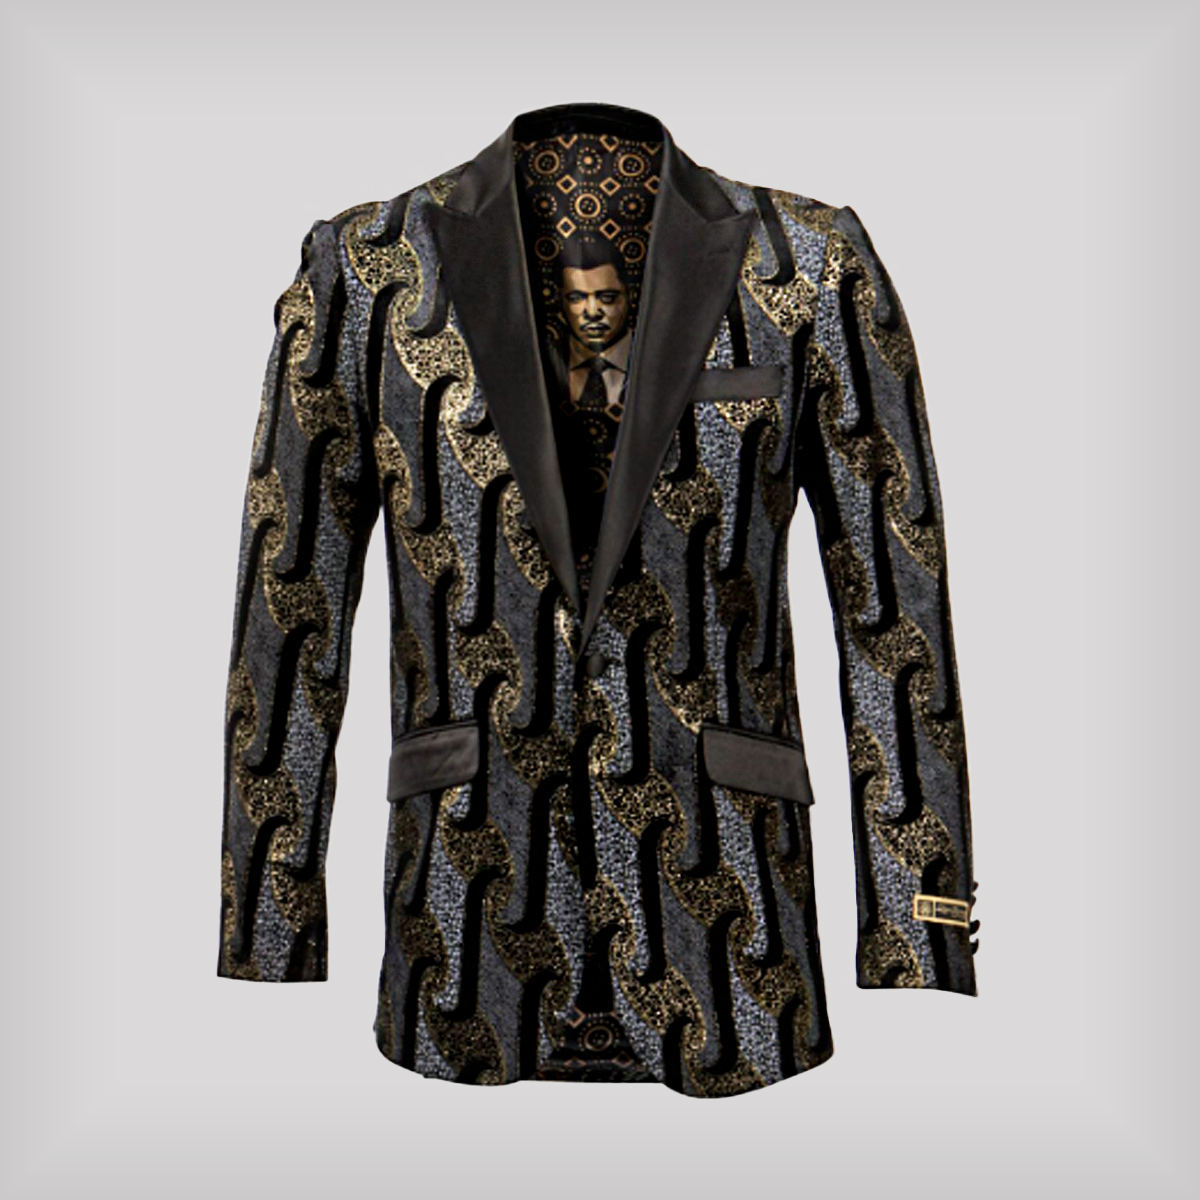 Gold and grey purchase tuxedo jacket